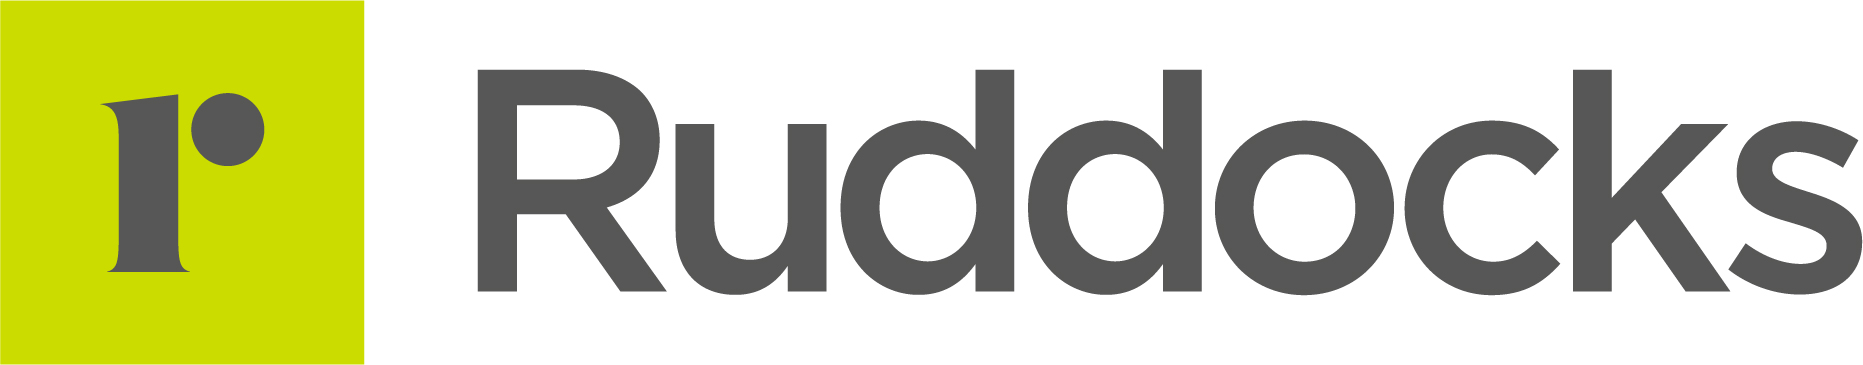 Ruddocks logo